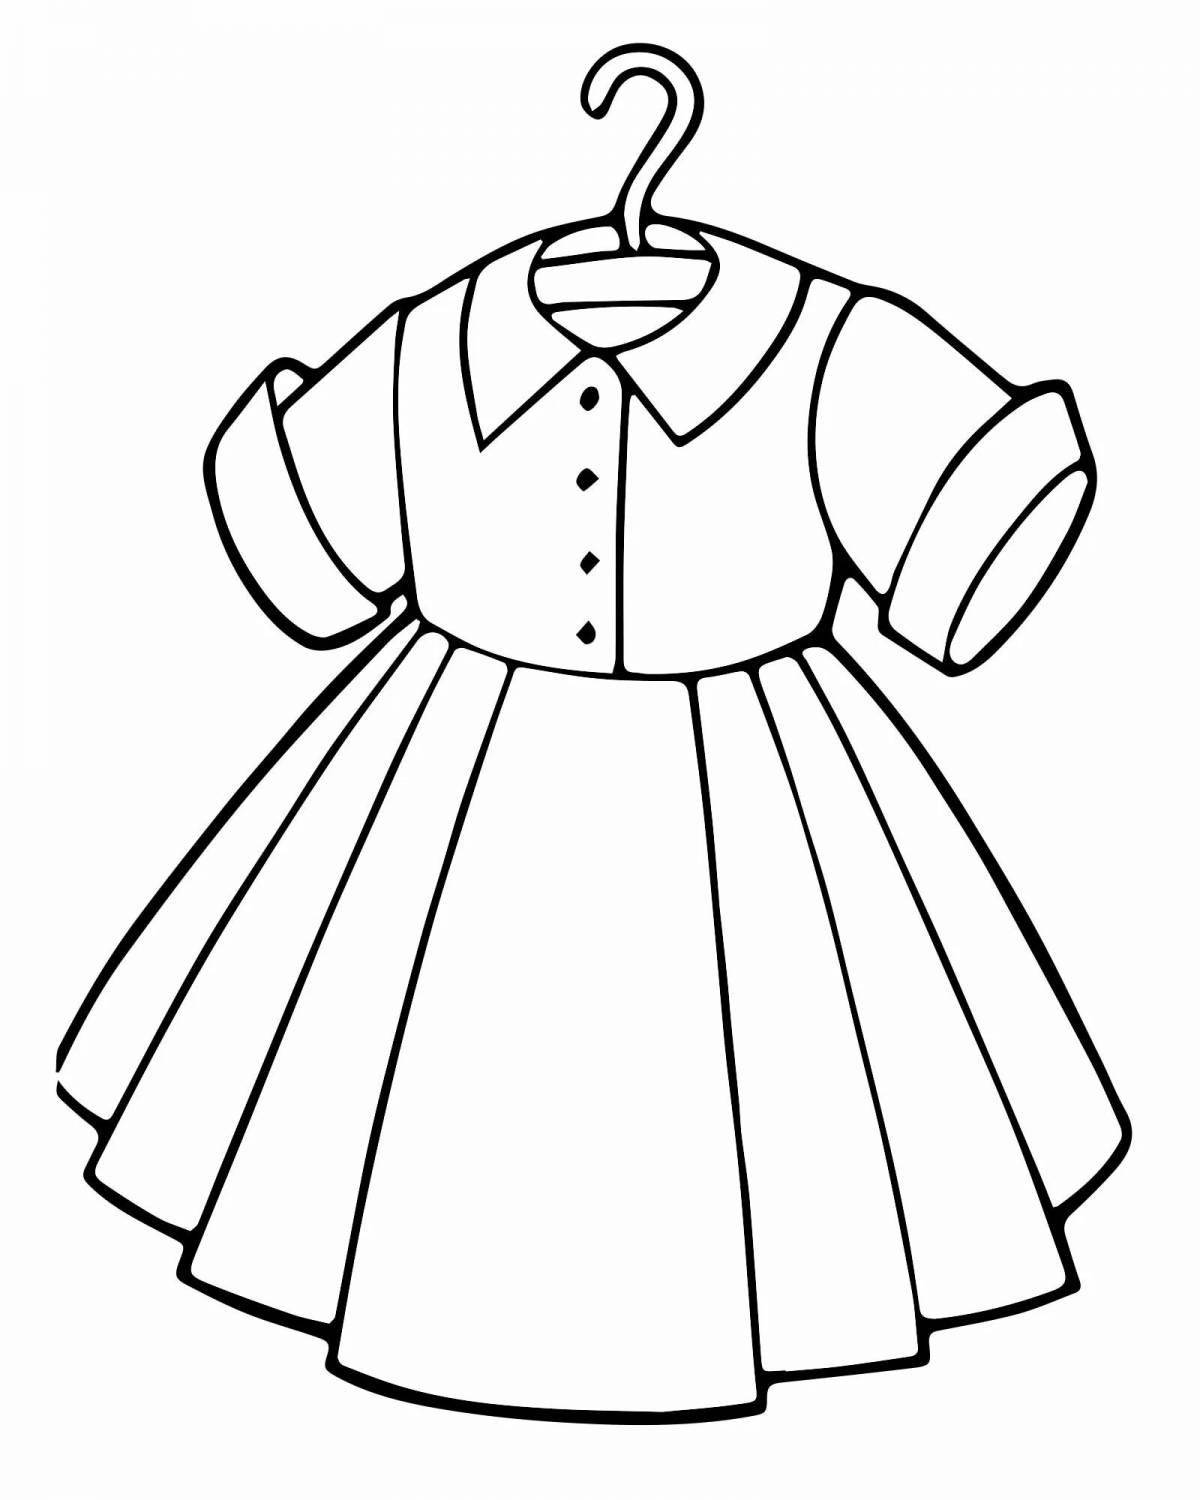 Раскраска «игривое платье» для детей 4-5 лет